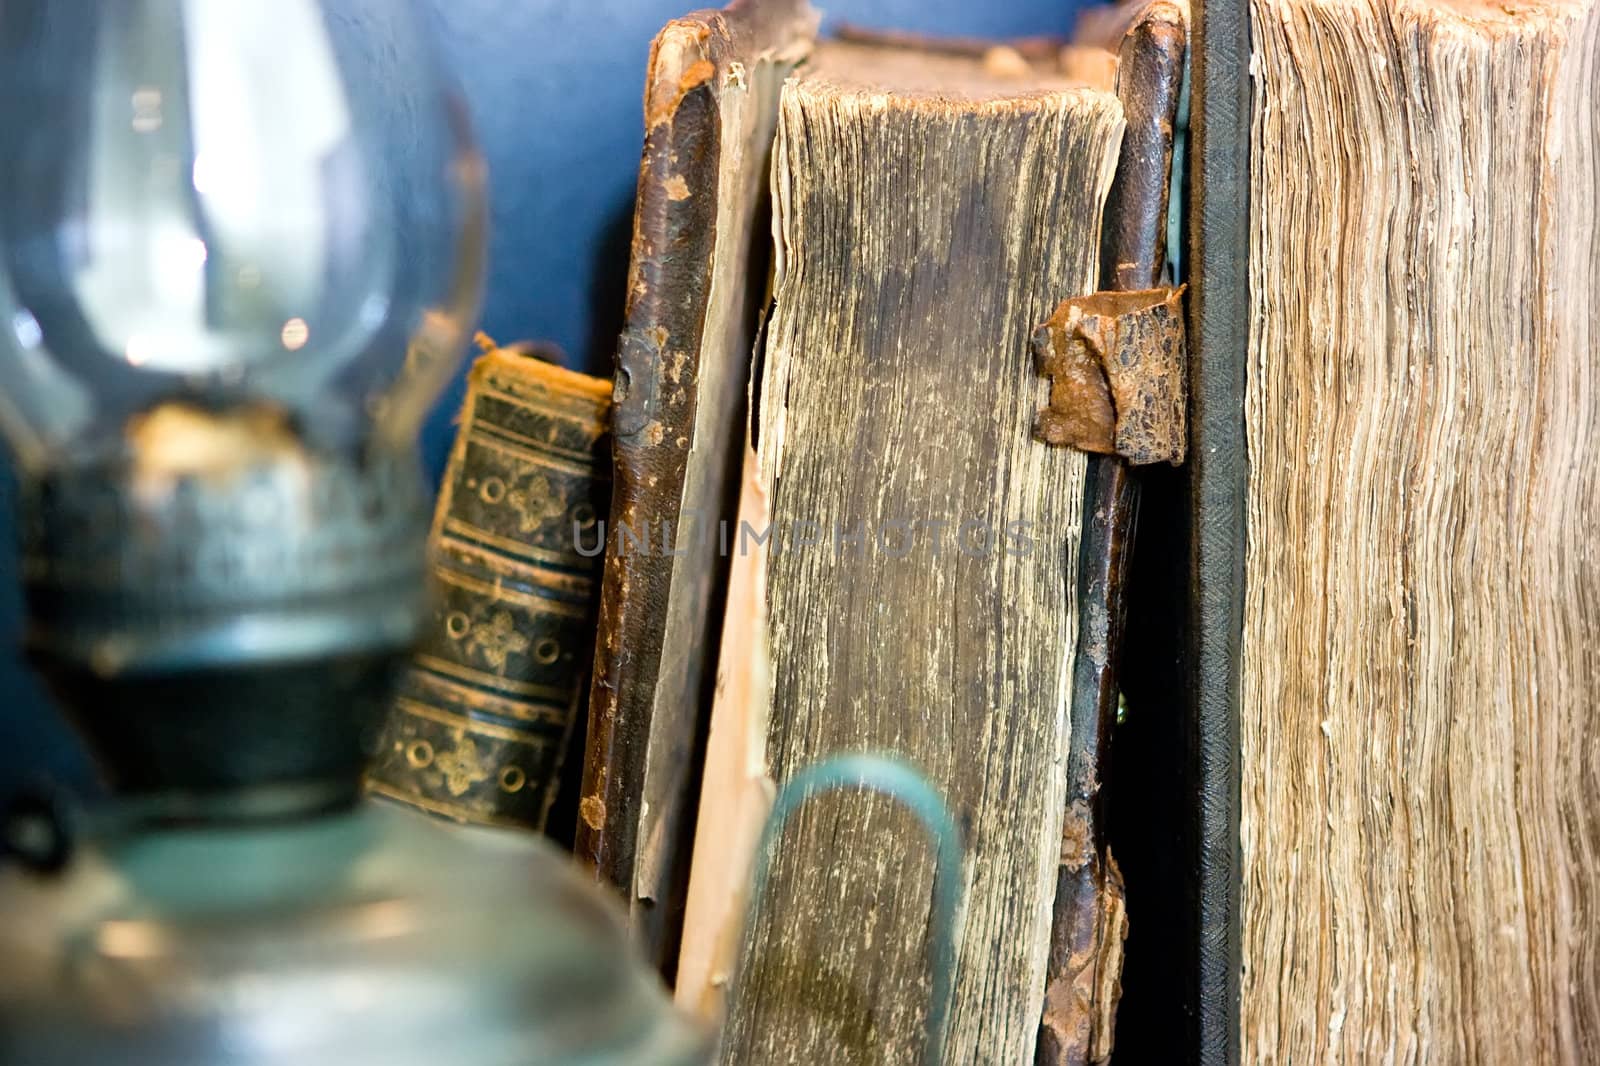 Old books and kerosene lamp